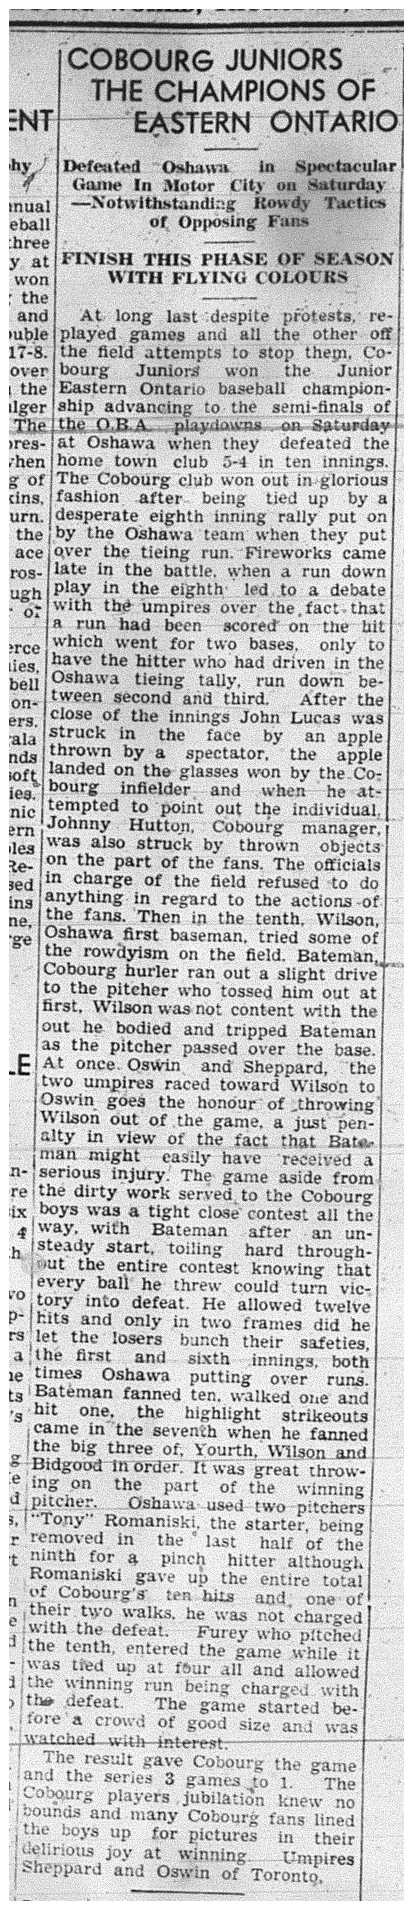 1939-09-07 Baseball -Cobourg Juniors vs Oshawa-Eastern Ontario Championship Game